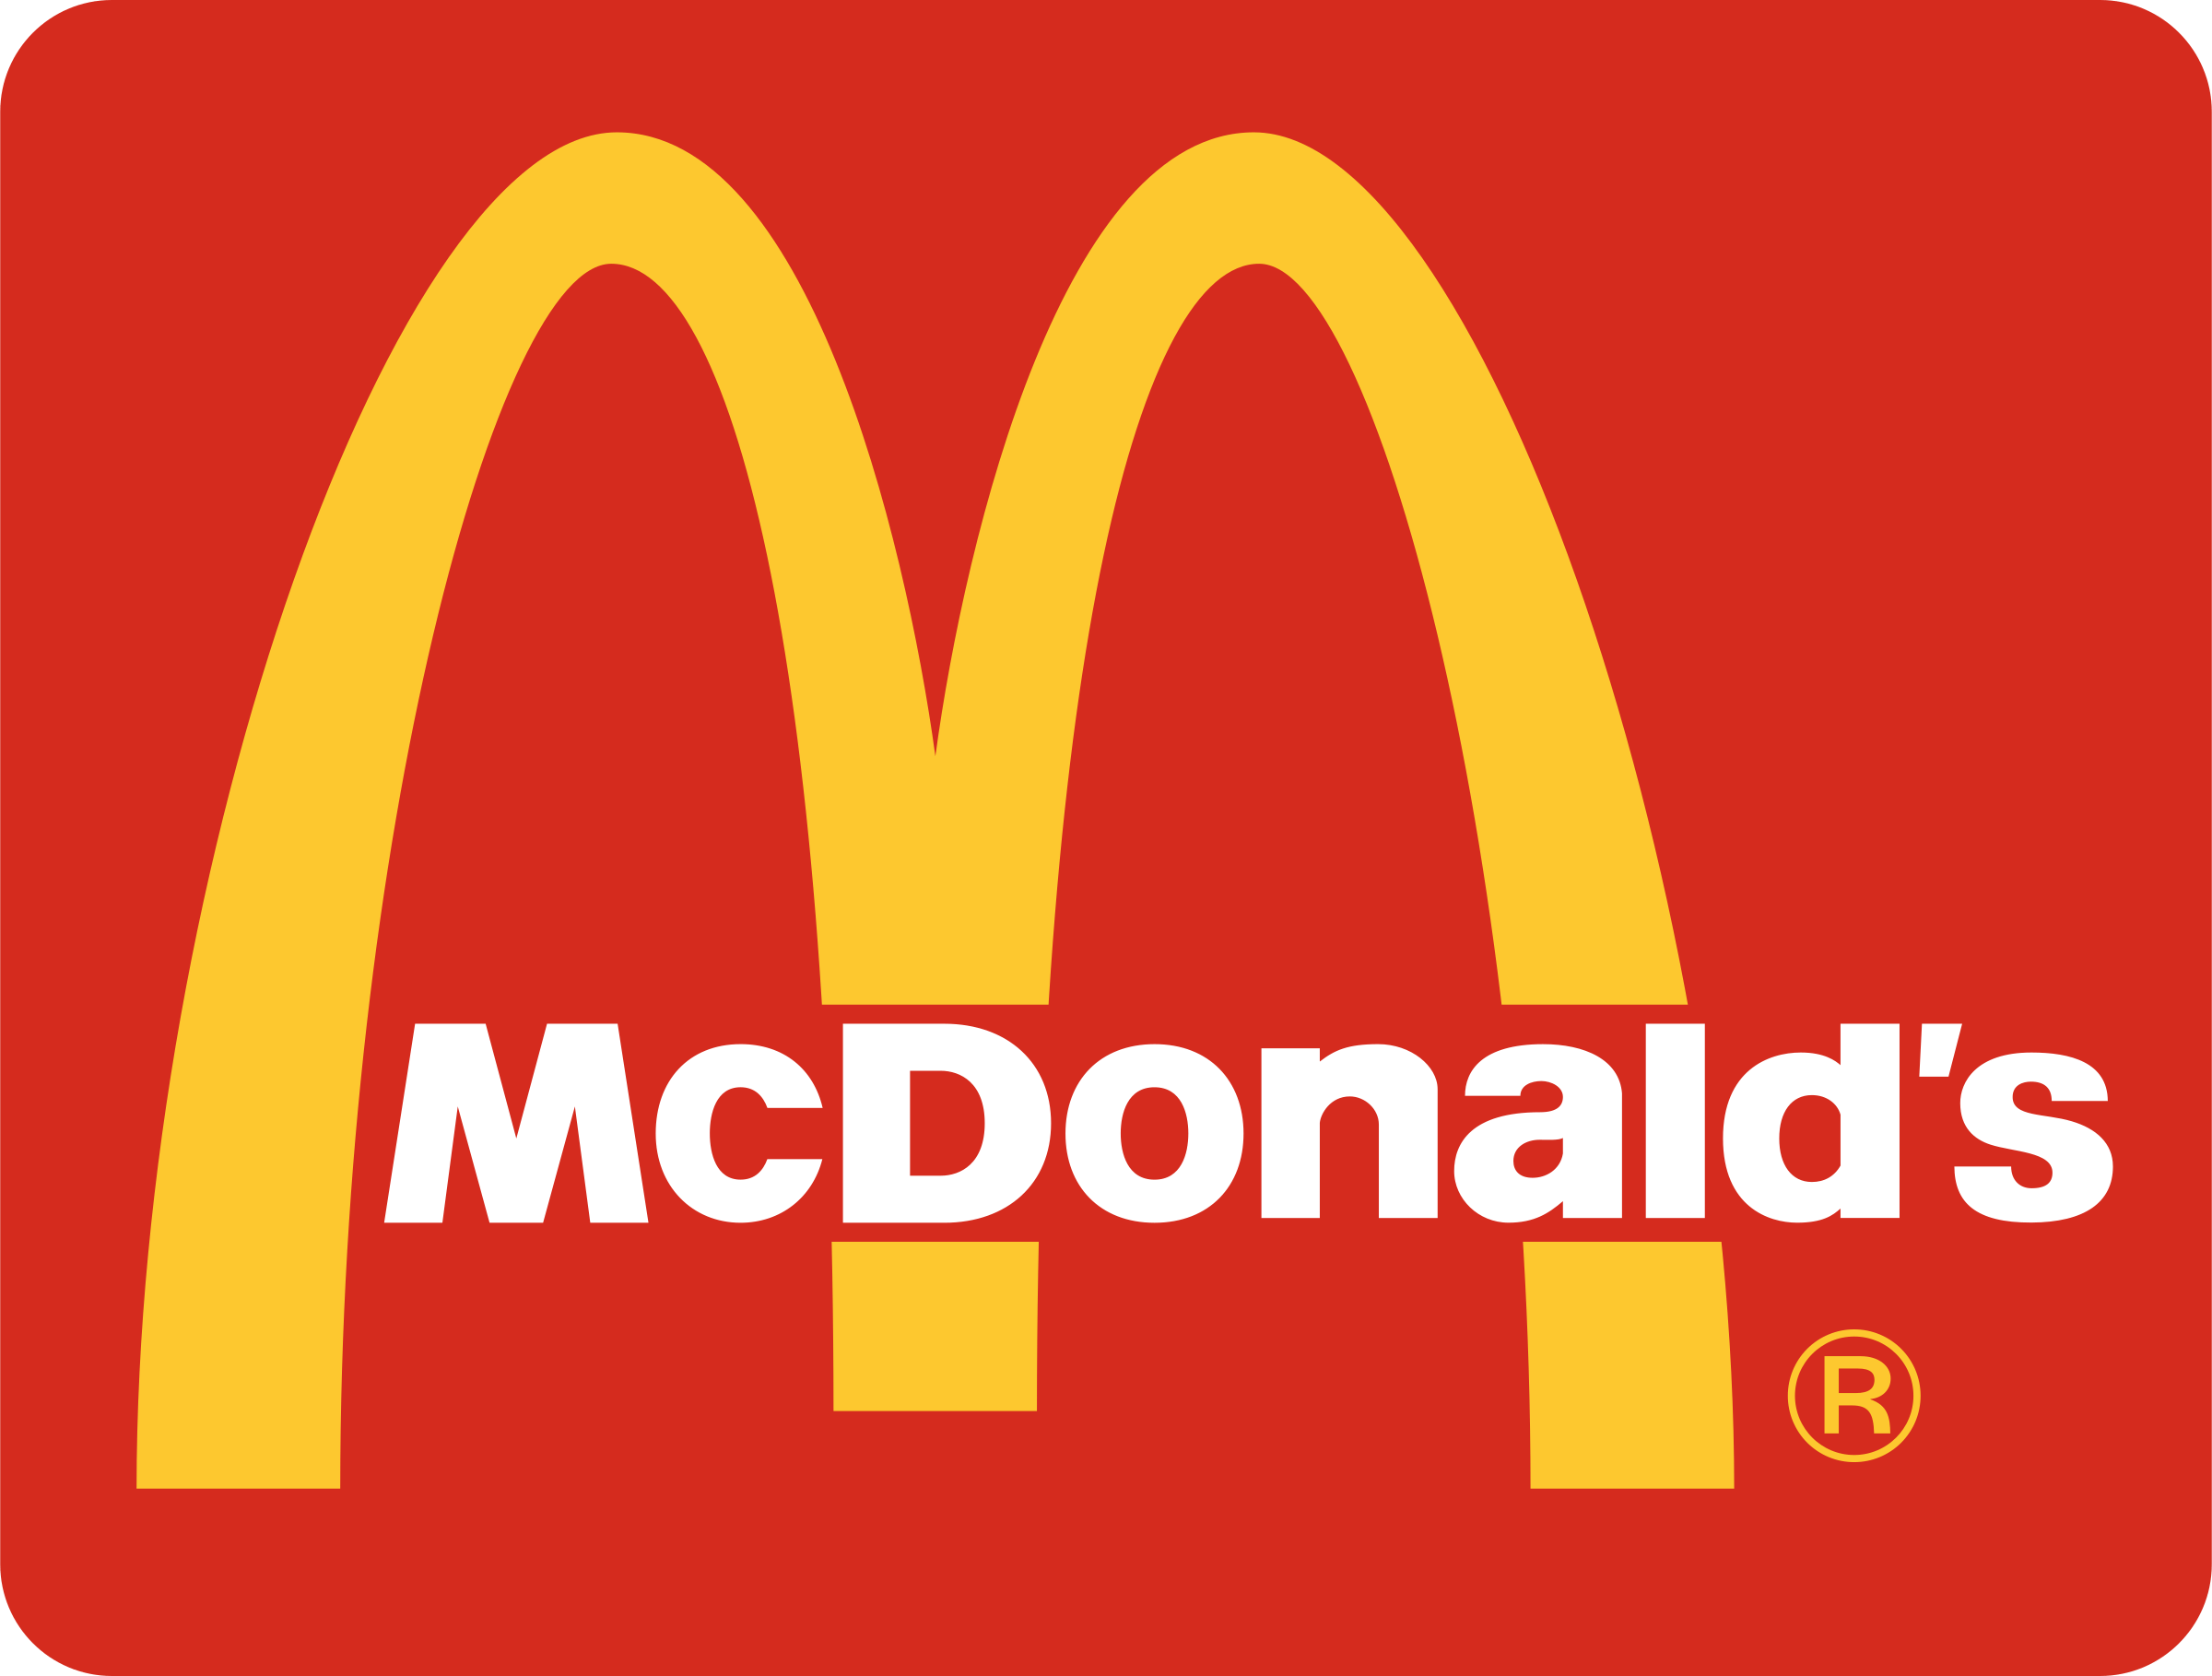 Chinese McDonald's Logo - McDonald's China Logo PNG Transparent & SVG Vector